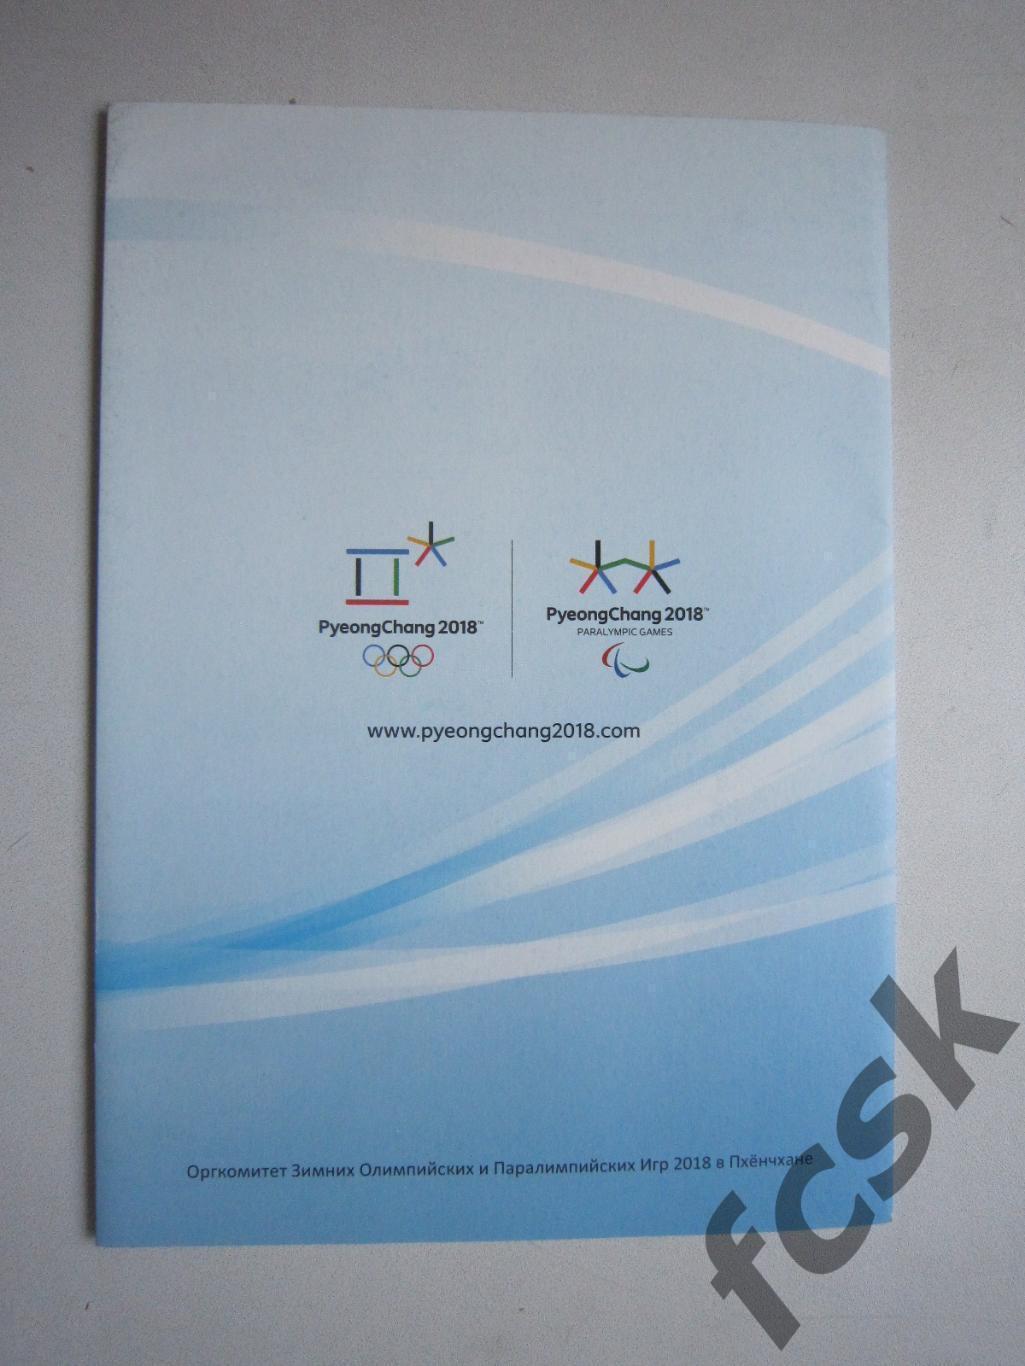 Пхенчхан 2018 Зимние Олимпийские и Паралимпийские Игры 1